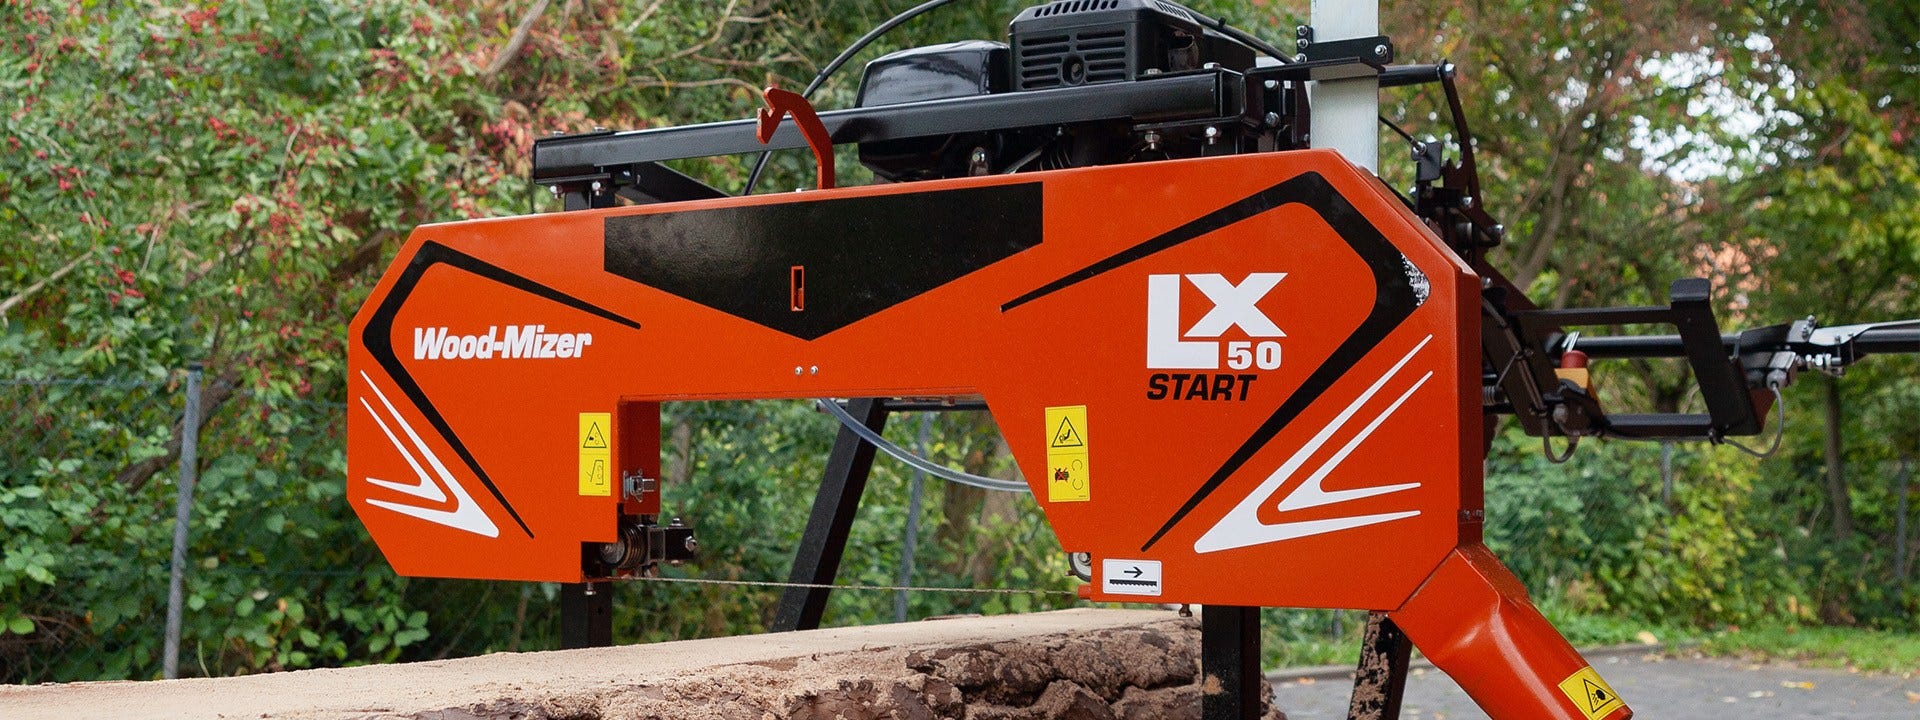 Wood-Mizer présente la scierie d’entrée de gamme LX50START pour scier économiquement vos billes et votre bois d’œuvre  